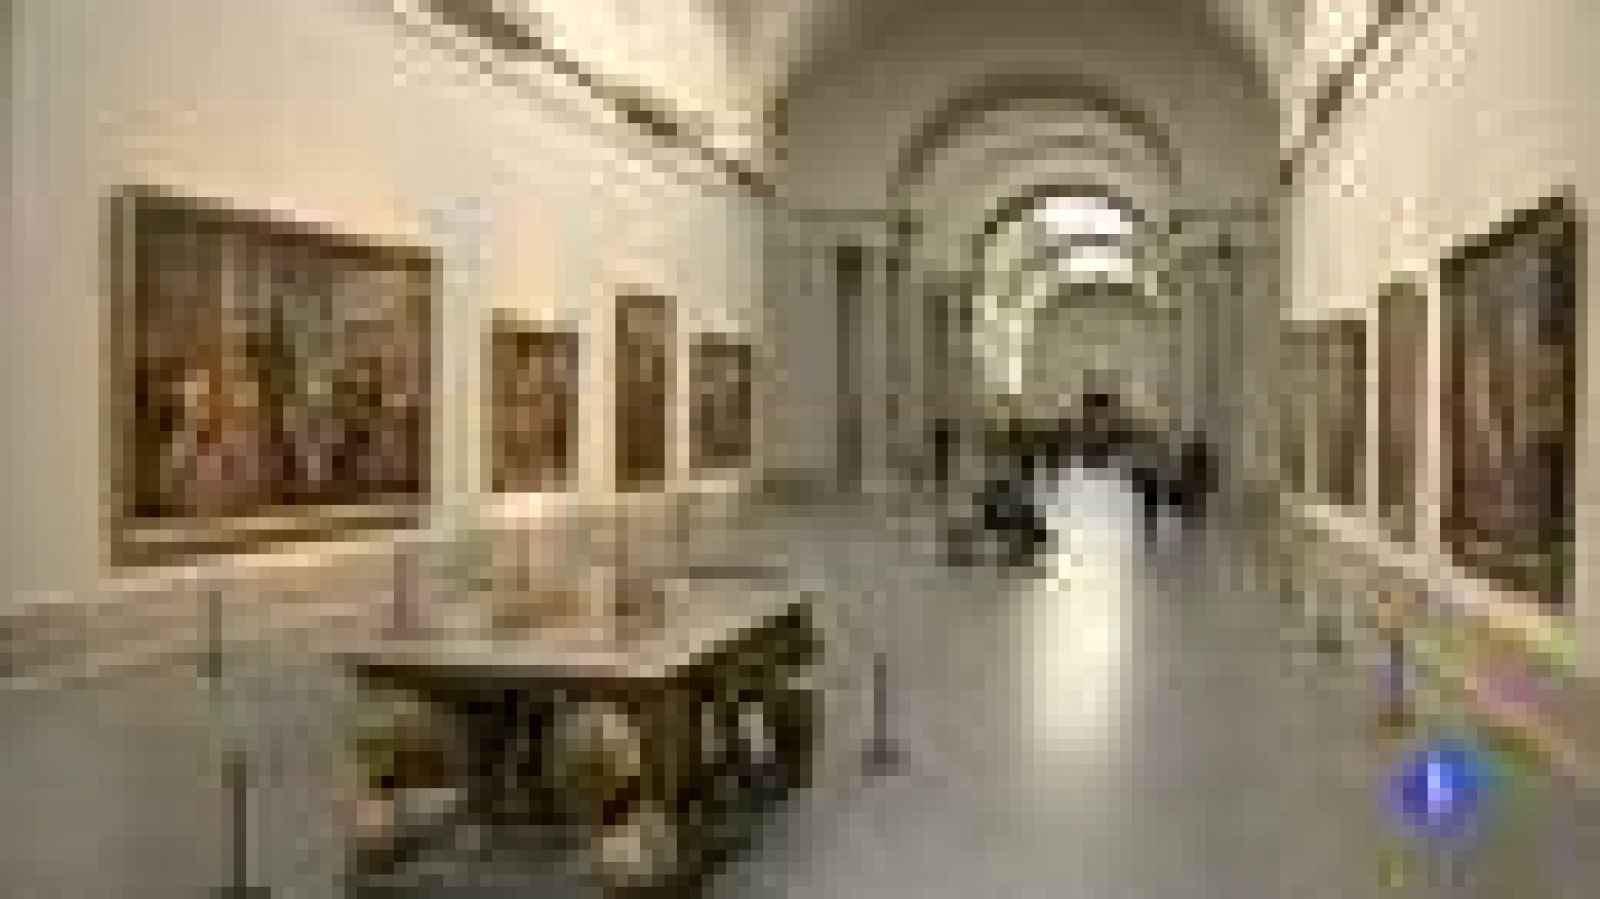 Desde hoy, el Museo del Prado abre todos los días de la semana